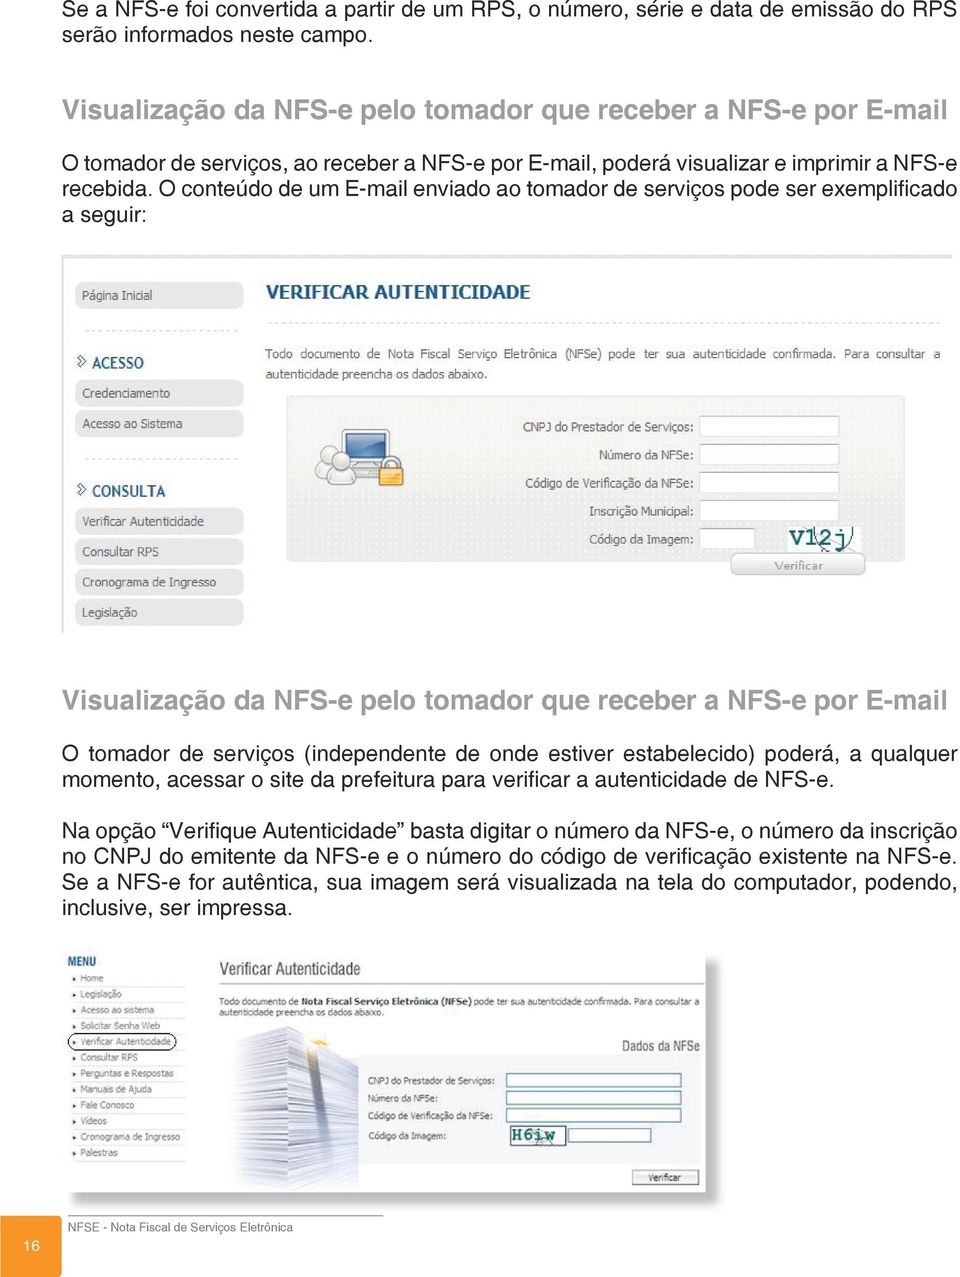 O conteúdo de um E-mail enviado ao tomador de serviços pode ser exemplificado a seguir: Visualização da NFS-e pelo tomador que receber a NFS-e por E-mail O tomador de serviços (independente de onde